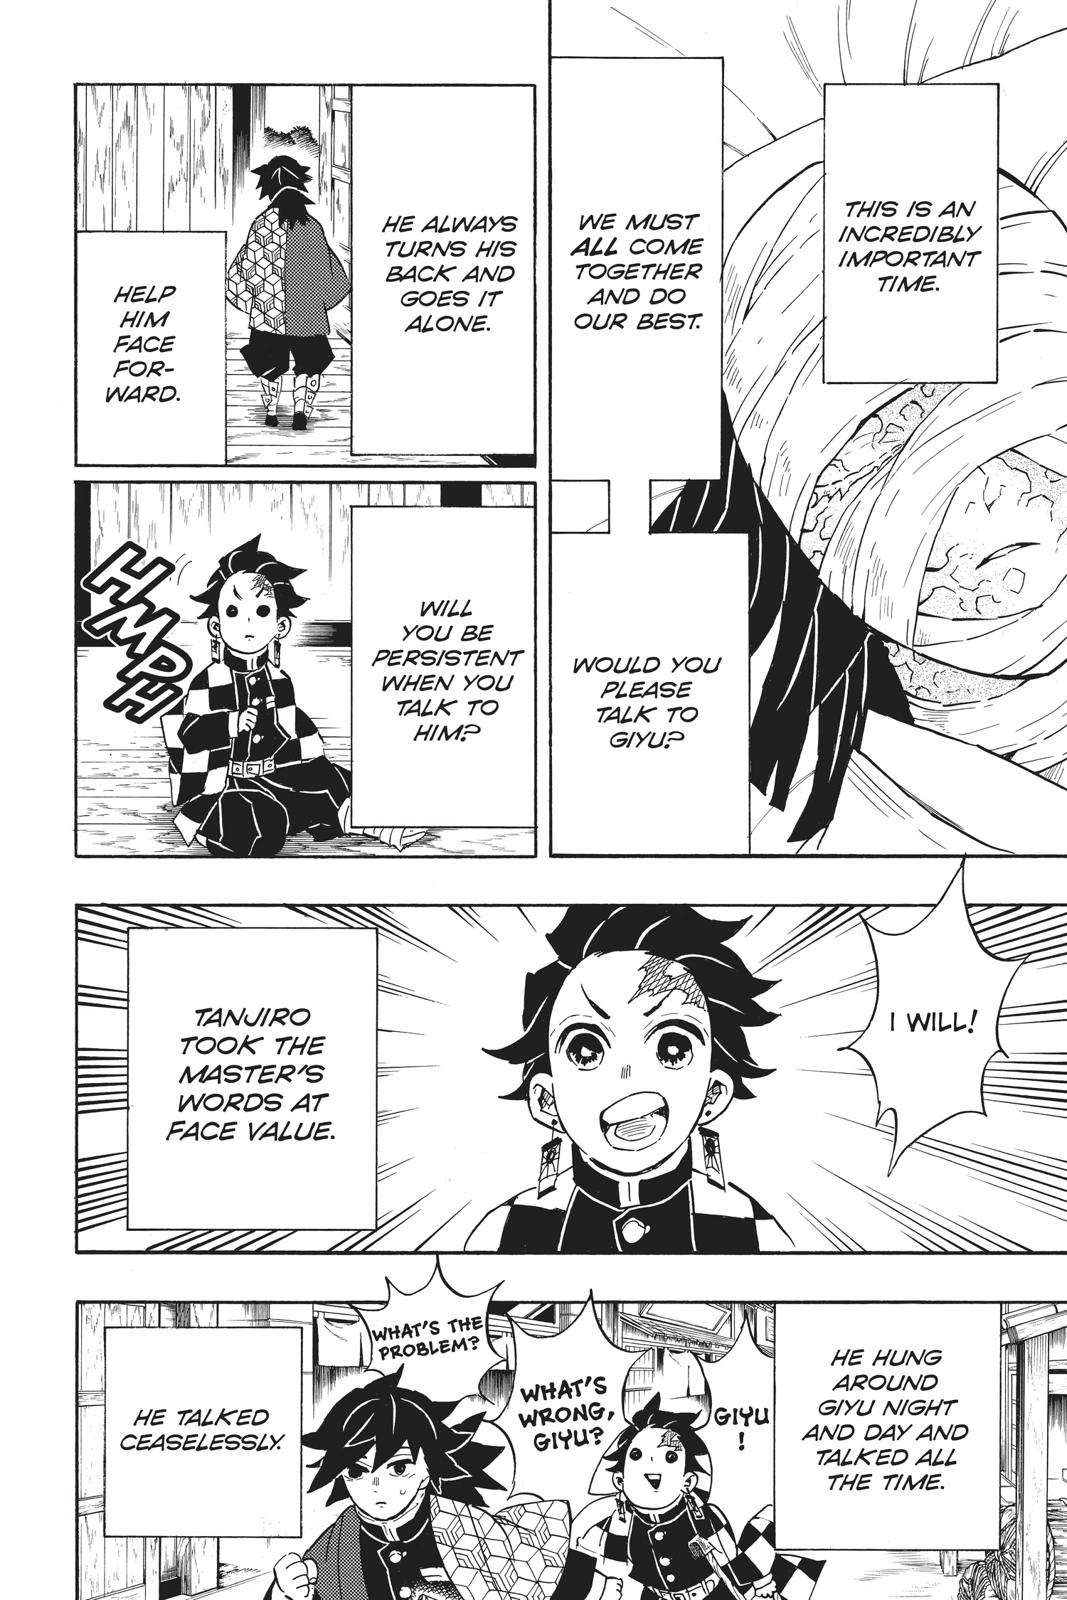 Demon Slayer Manga Manga Chapter - 130 - image 12